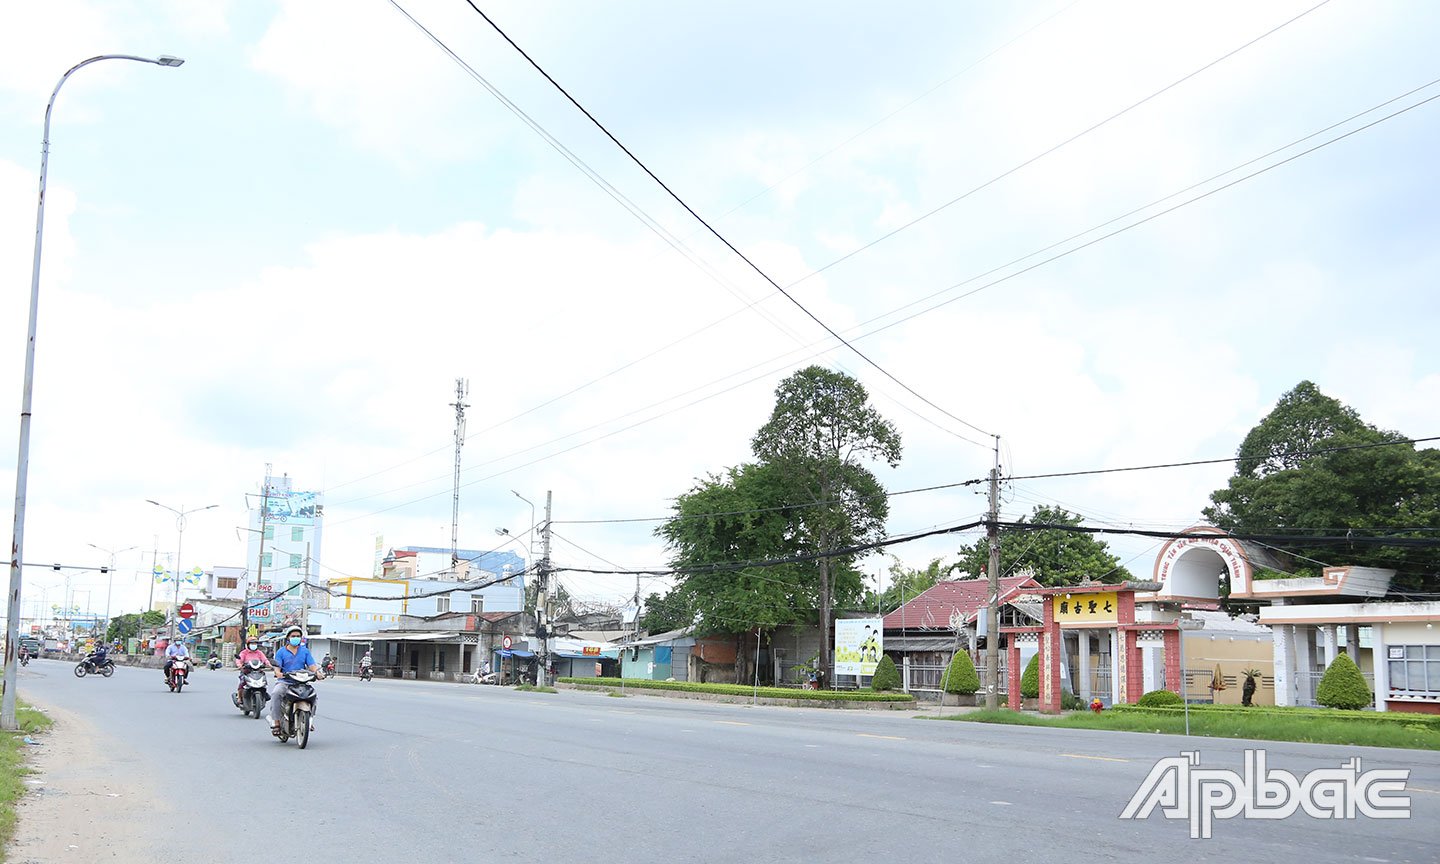 Các tuyến đường ở thị trấn Vĩnh Bình đều vắng người và phương tiện lưu thông.